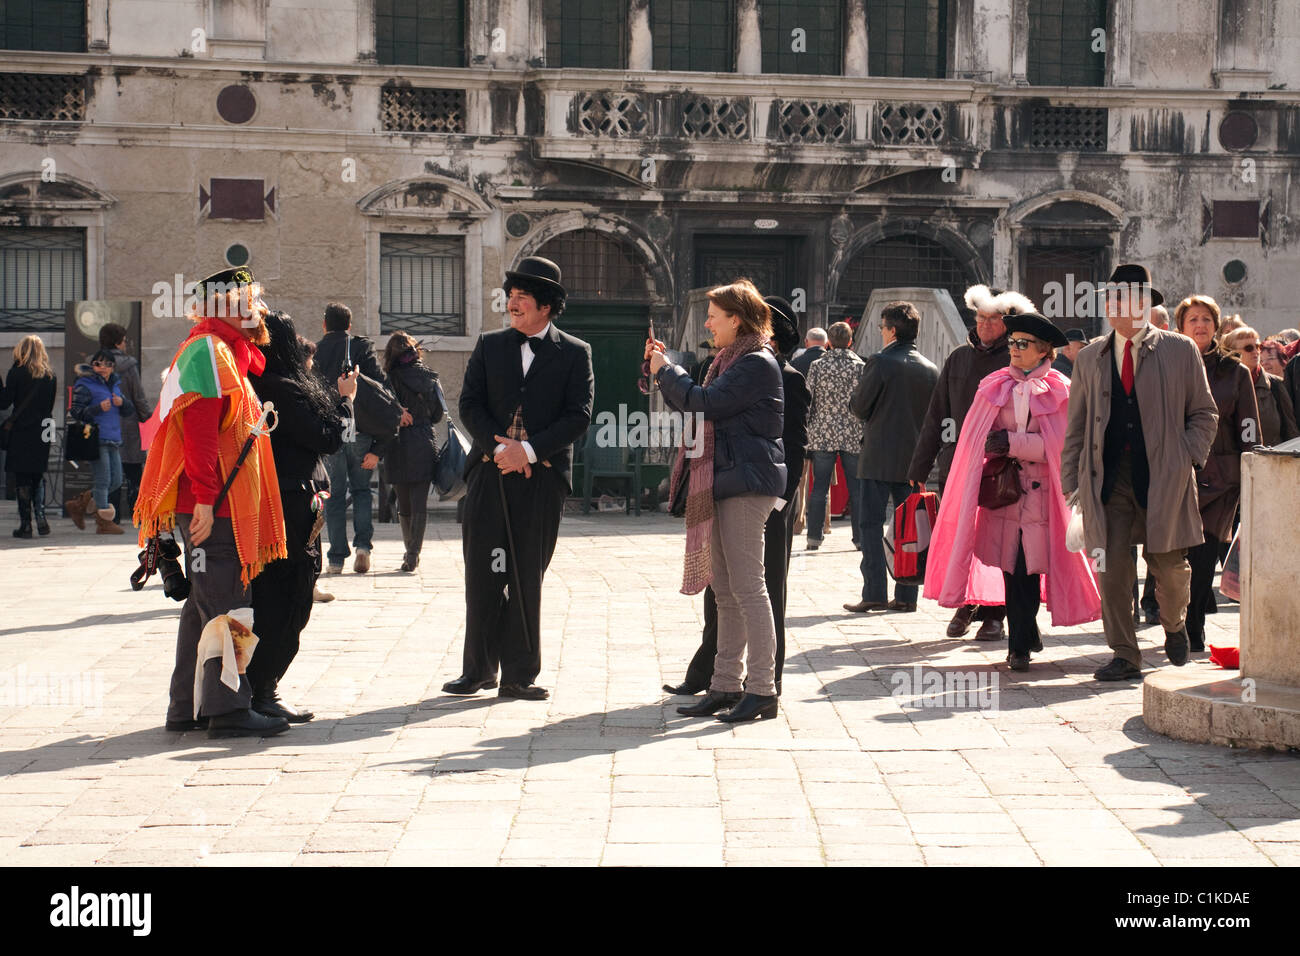 Les touristes photographie des personnages costumés au carnaval, Venise, Italie Banque D'Images